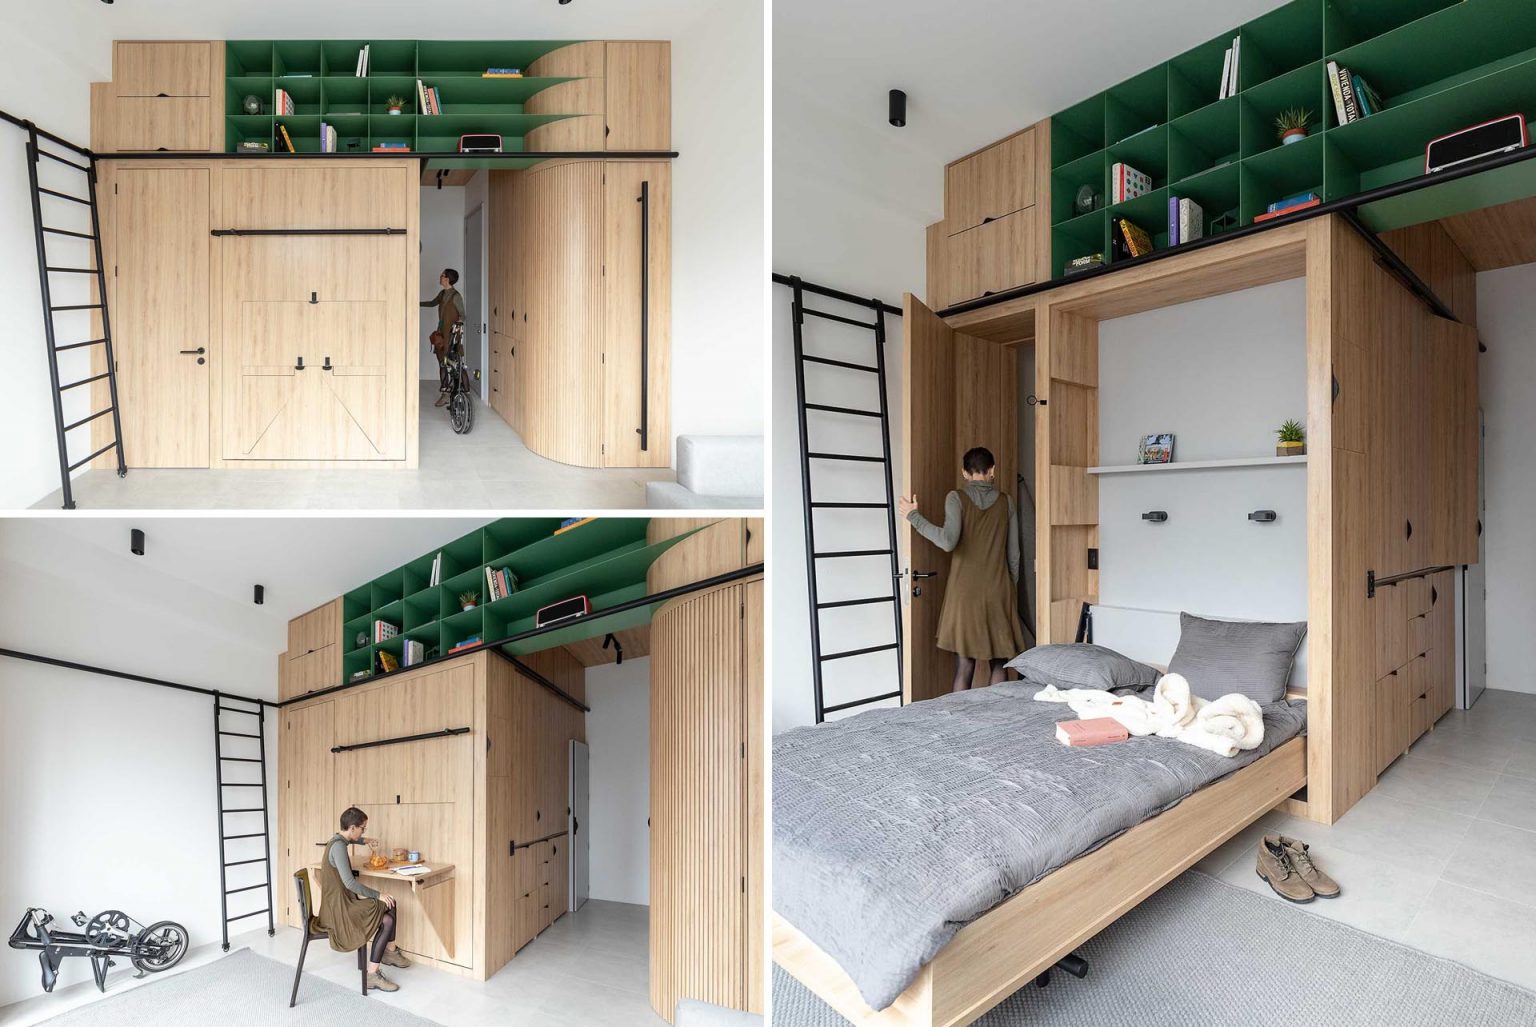 Thiết kế tủ đồ giúp tận dụng tối đa không gian trong căn hộ nhỏ - Ảnh 1.